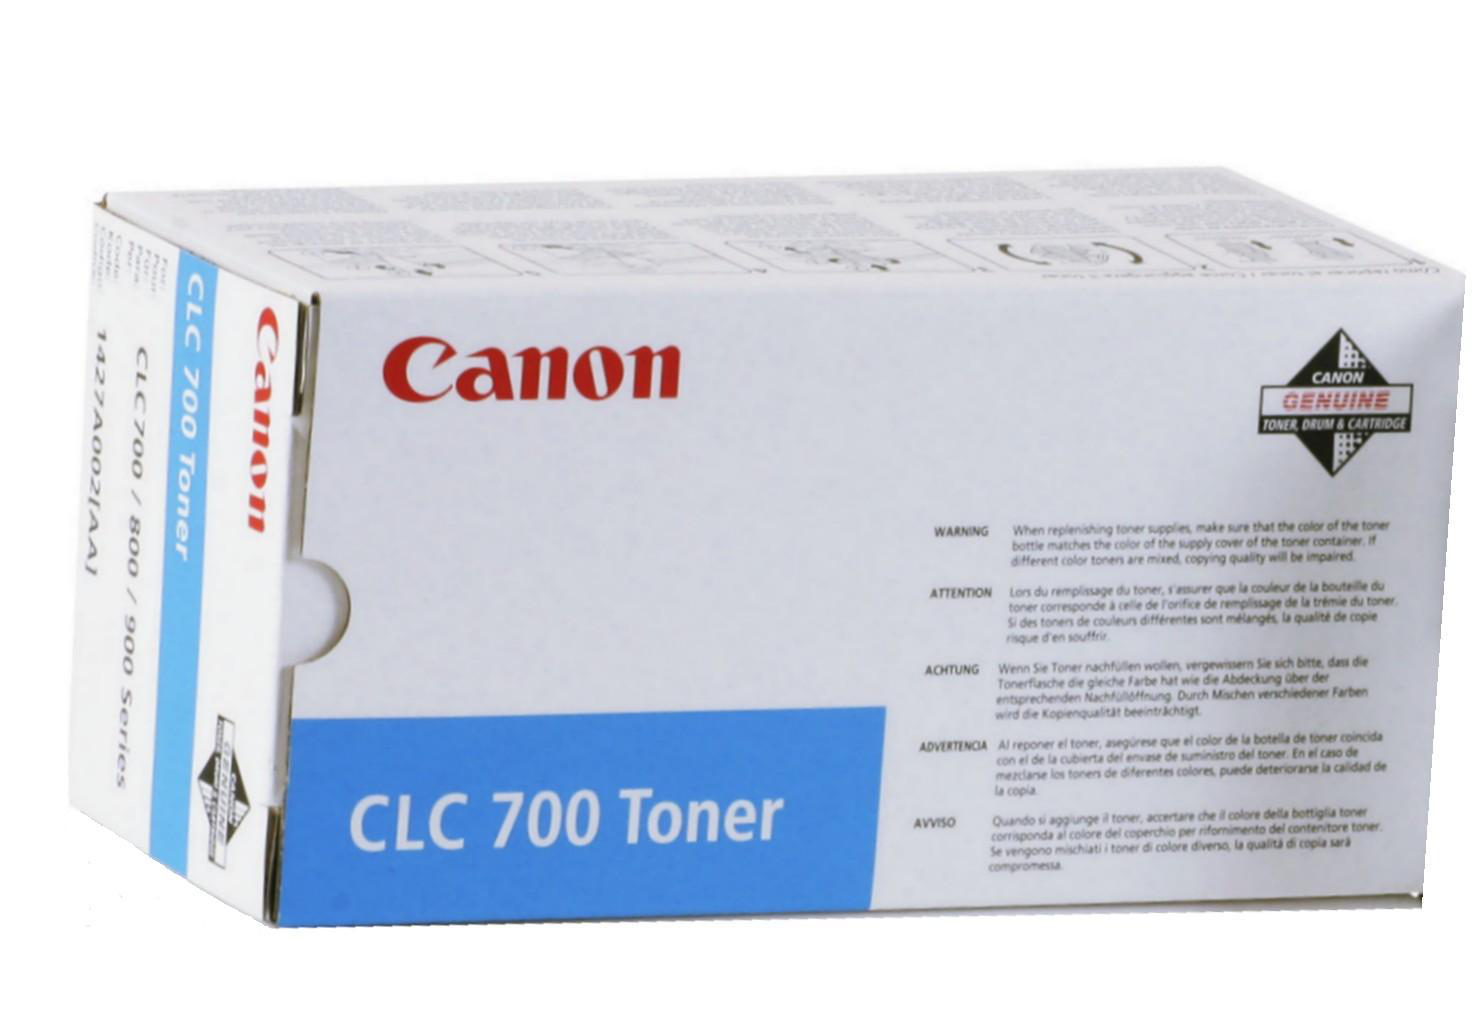 Canon CLC700 Toner - Blue